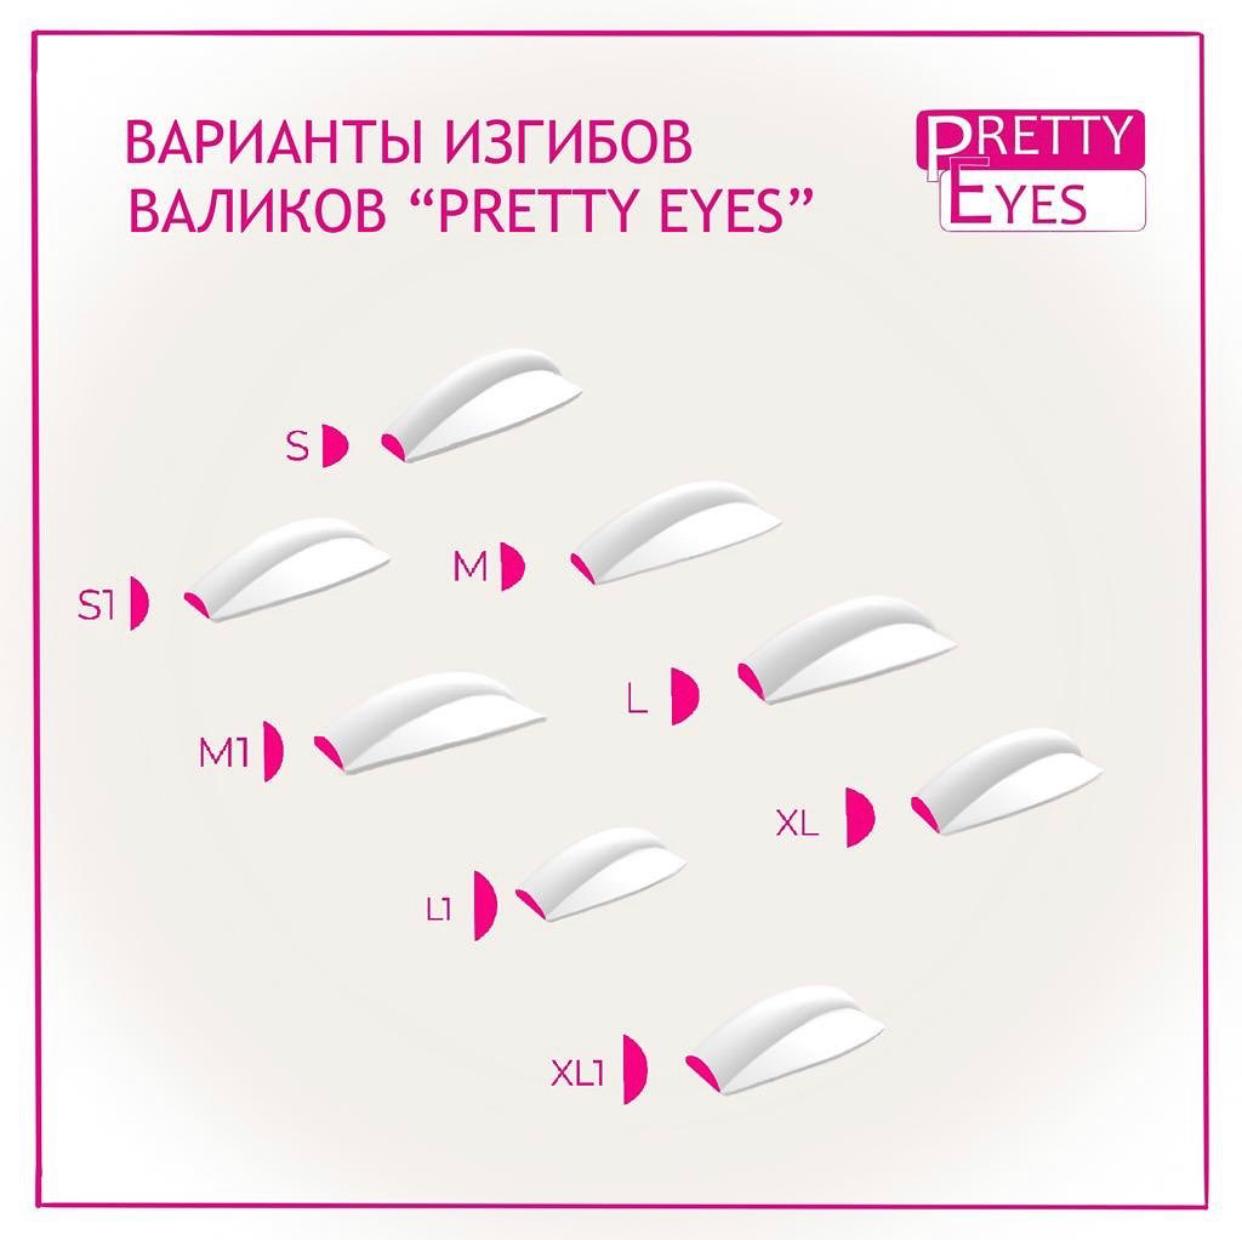 Набор валиков Pretty Eyes Classic (pink) 8 пар (S,M,L,XL,S1,M1,L1,XL1)